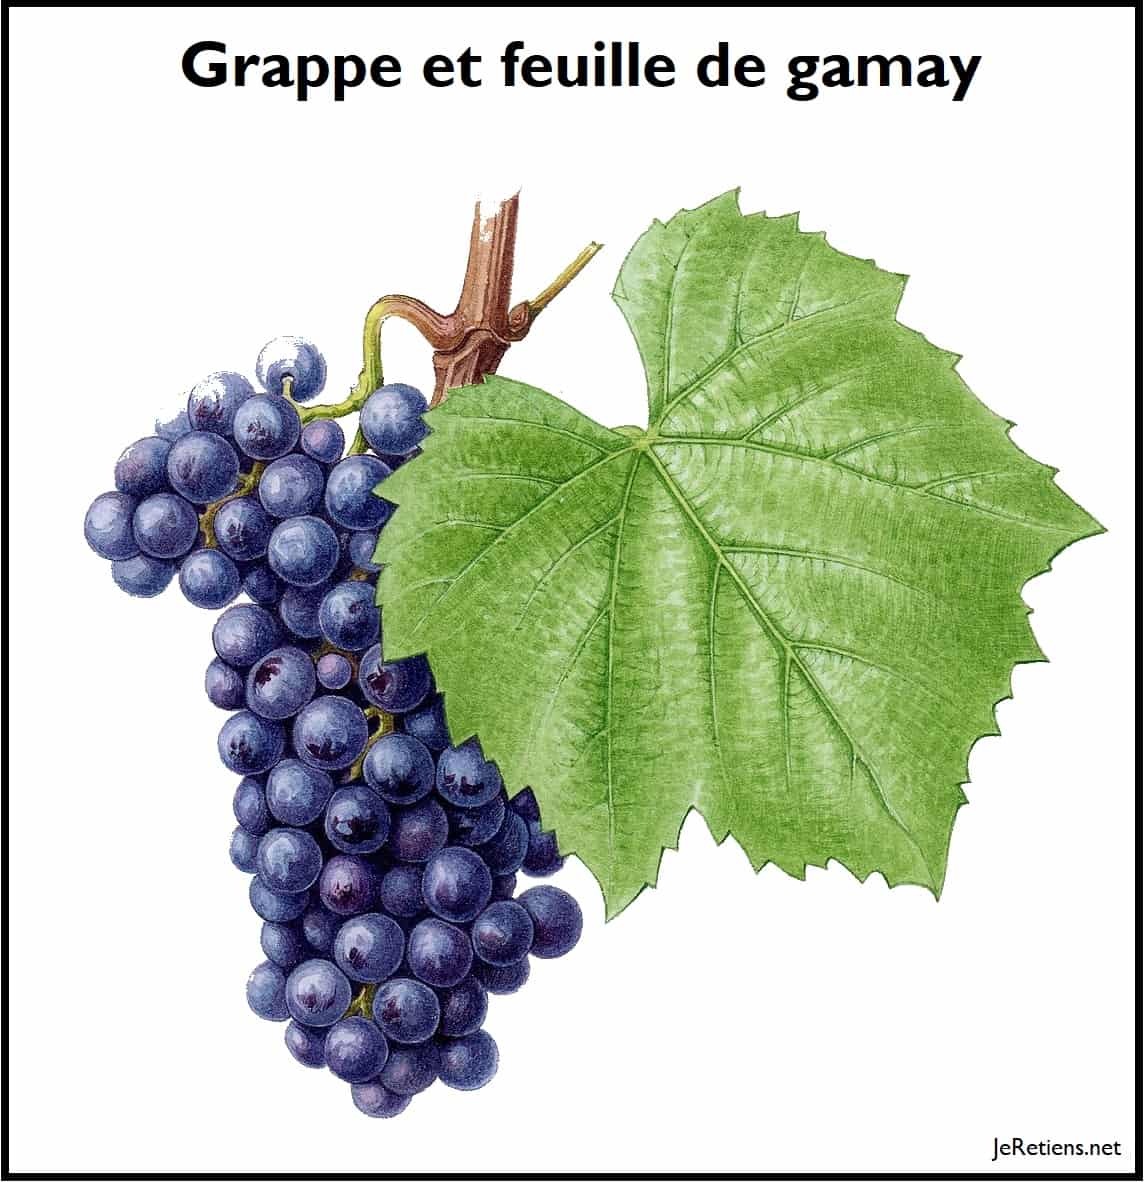 La vigne du Gamay : la feuille et la grappe de raisins